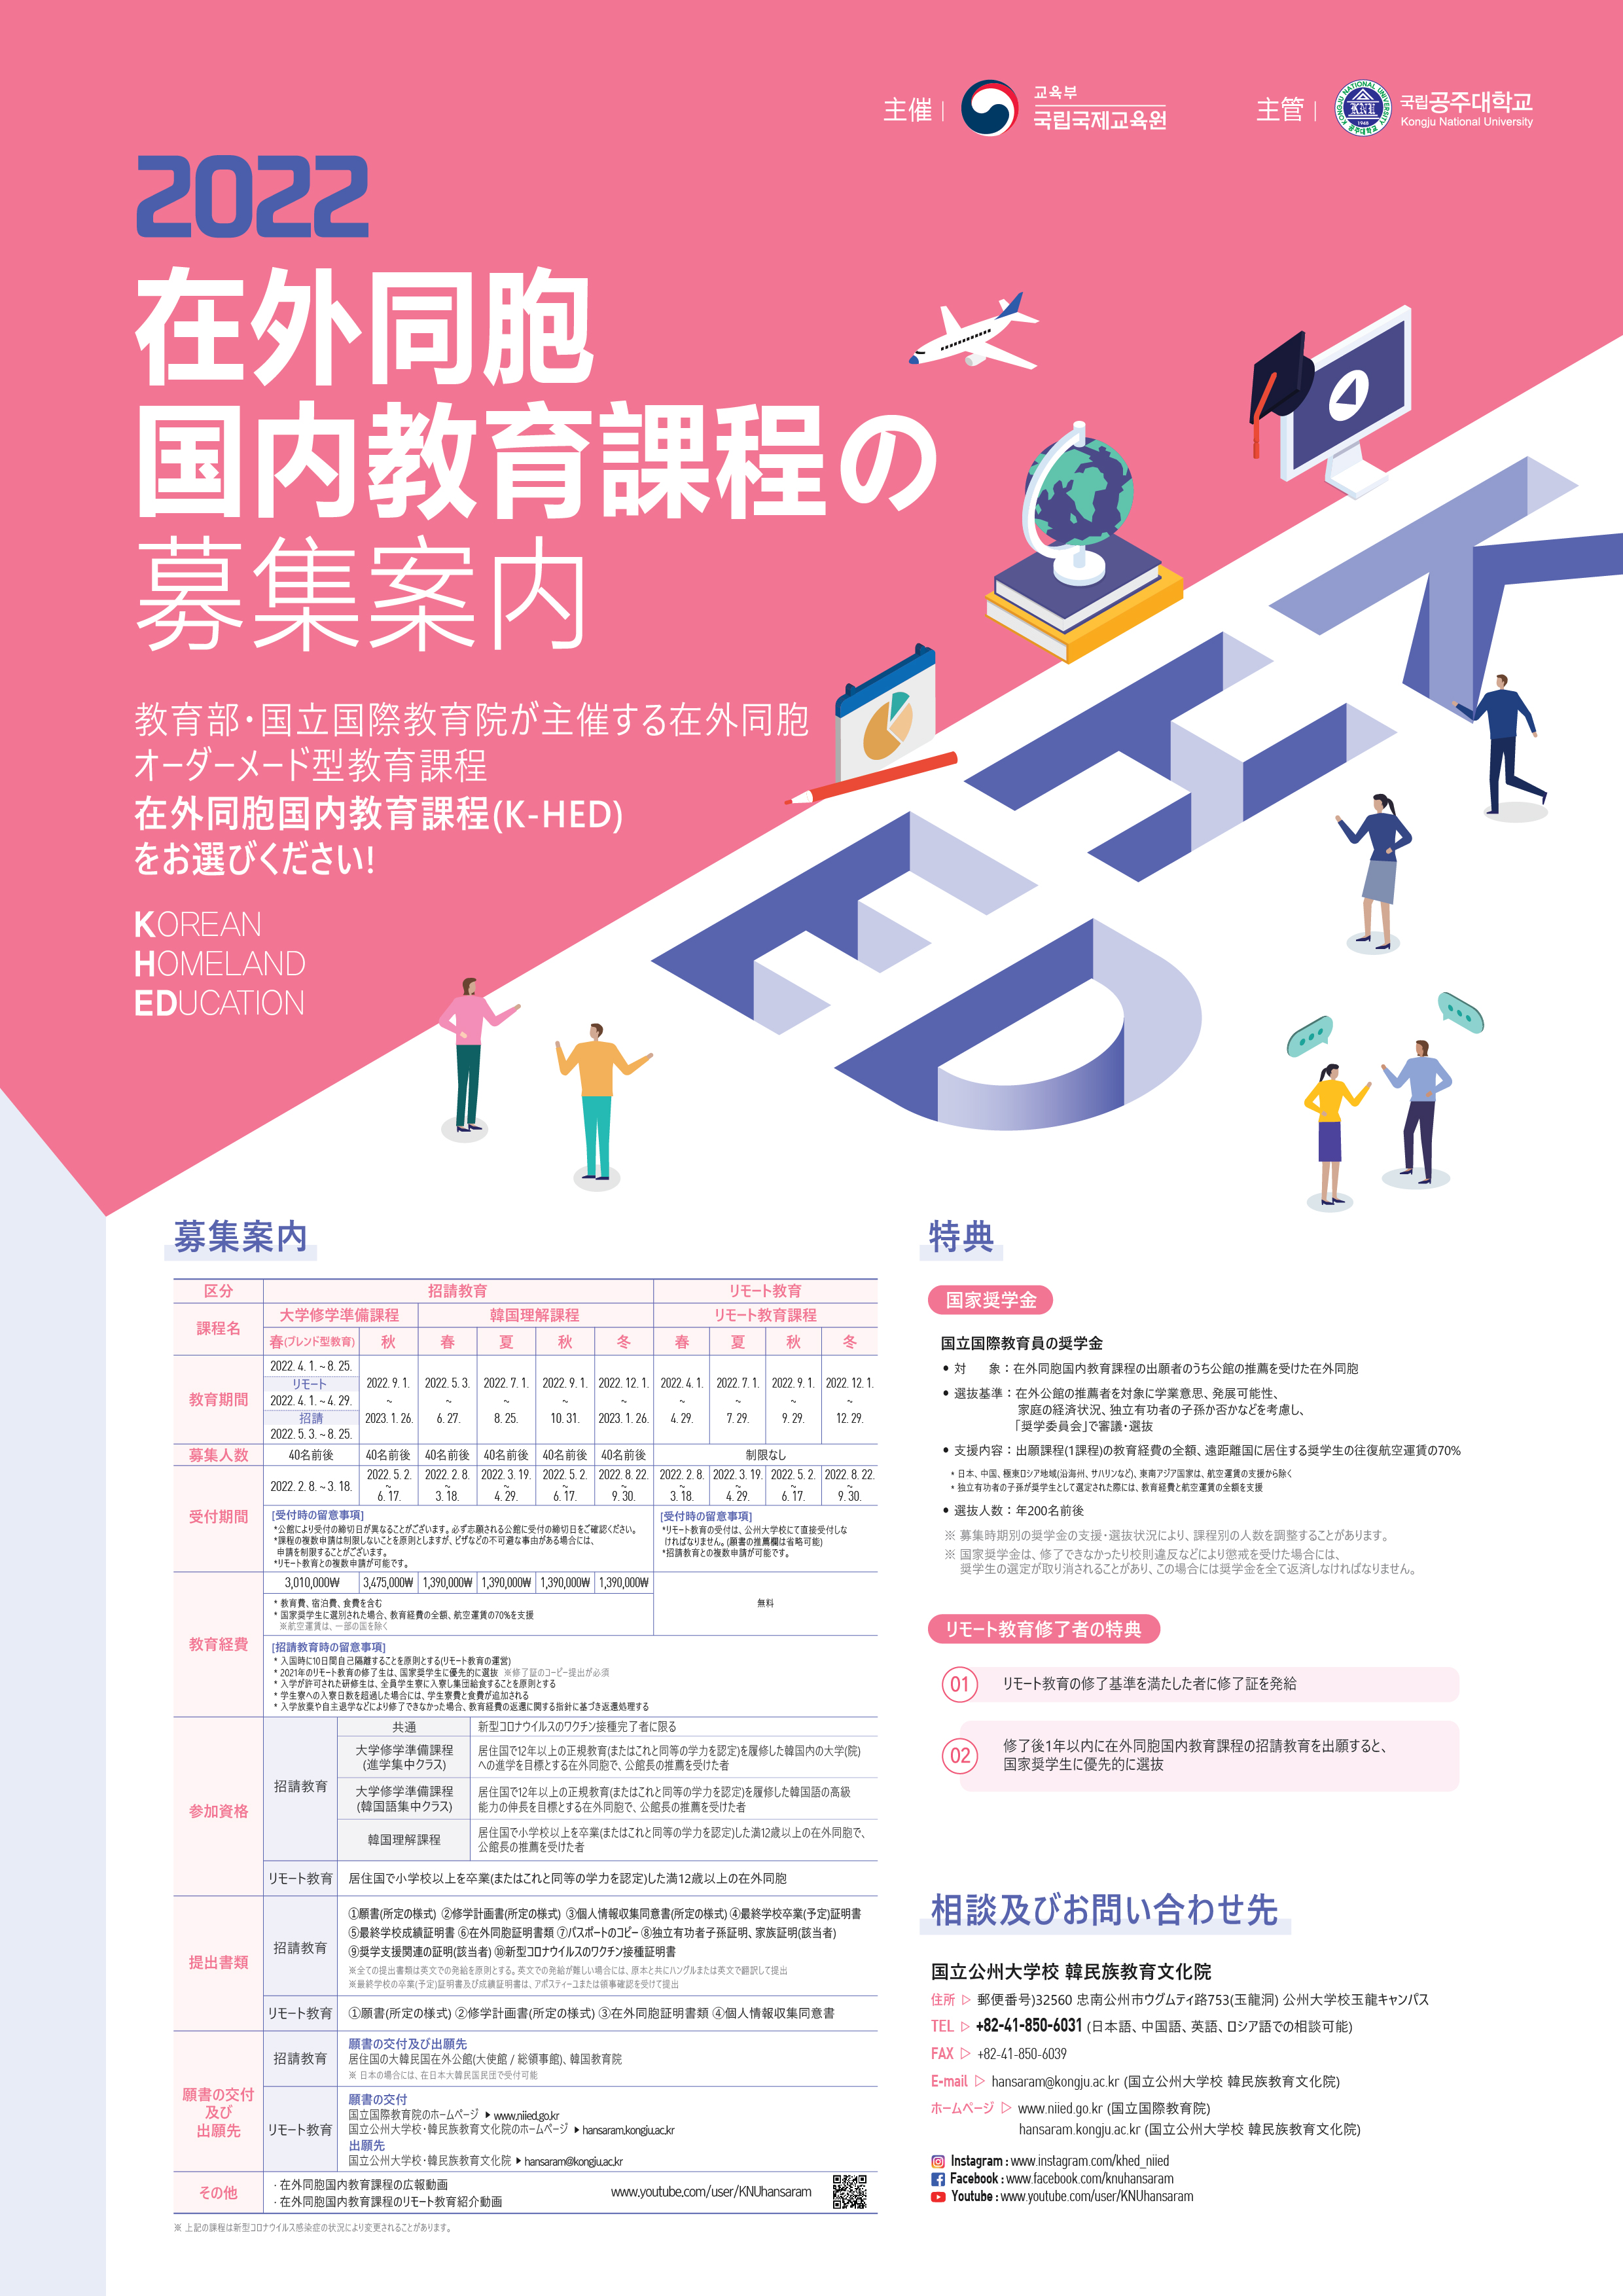 (K-HED)information about 2022 KOREAN HOMELAND EDUCATION_Jp_Poster.jpg